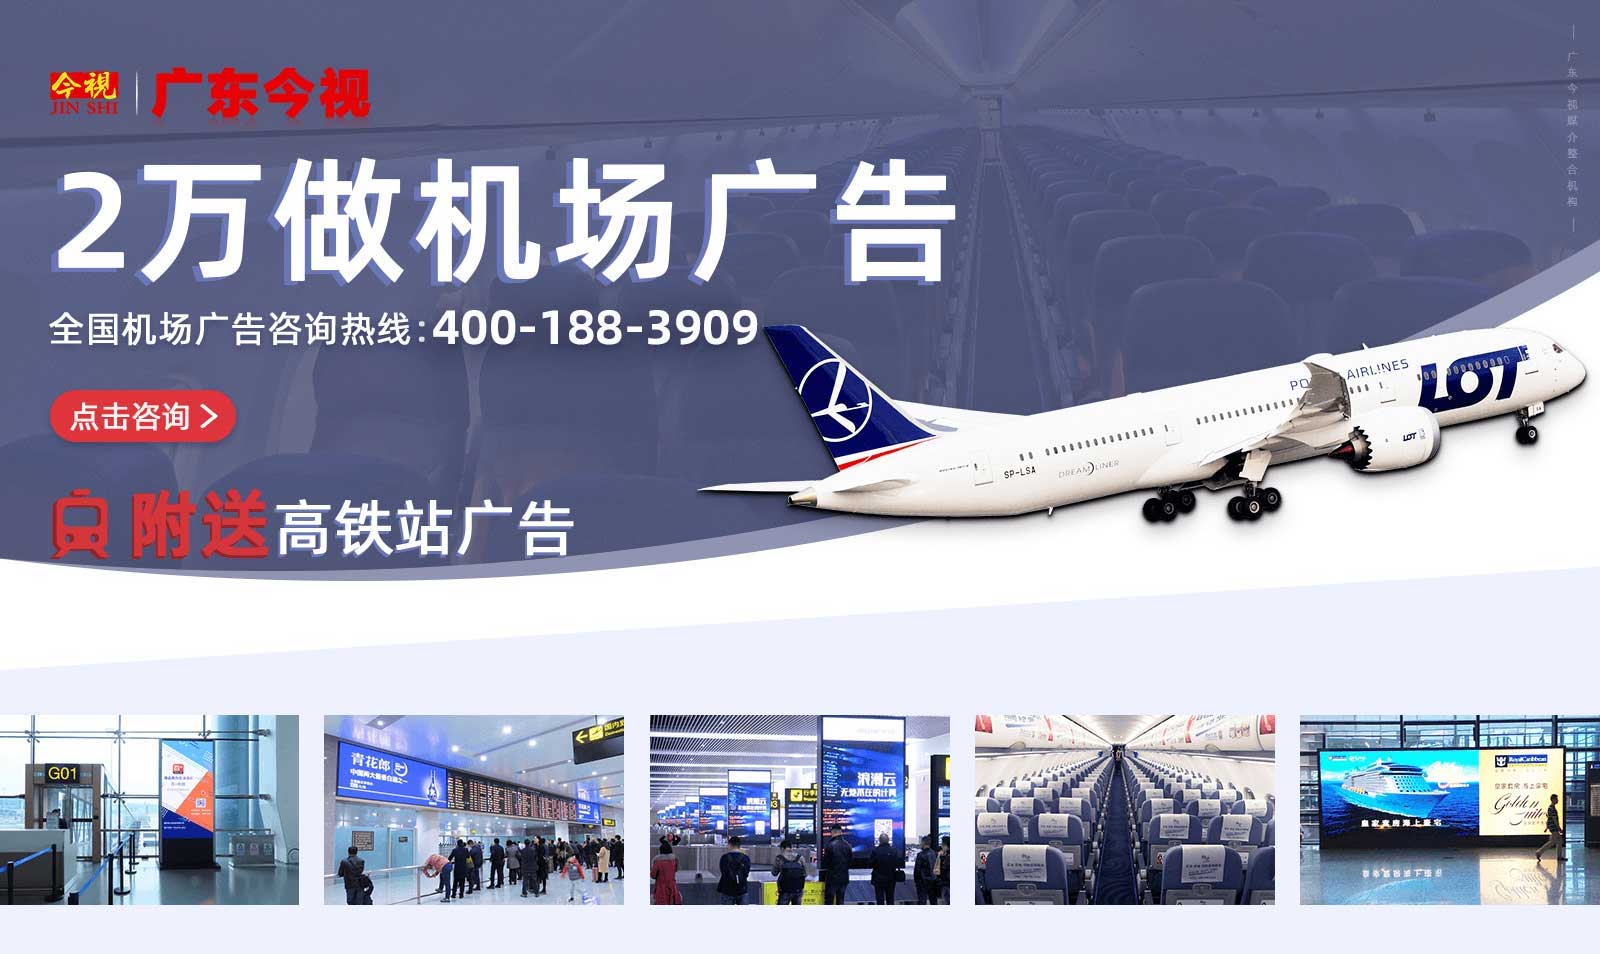 投放机场广告、飞机广告、机票广告、登机牌背面广告，就选广东今视广告投放热线400-158-3088.